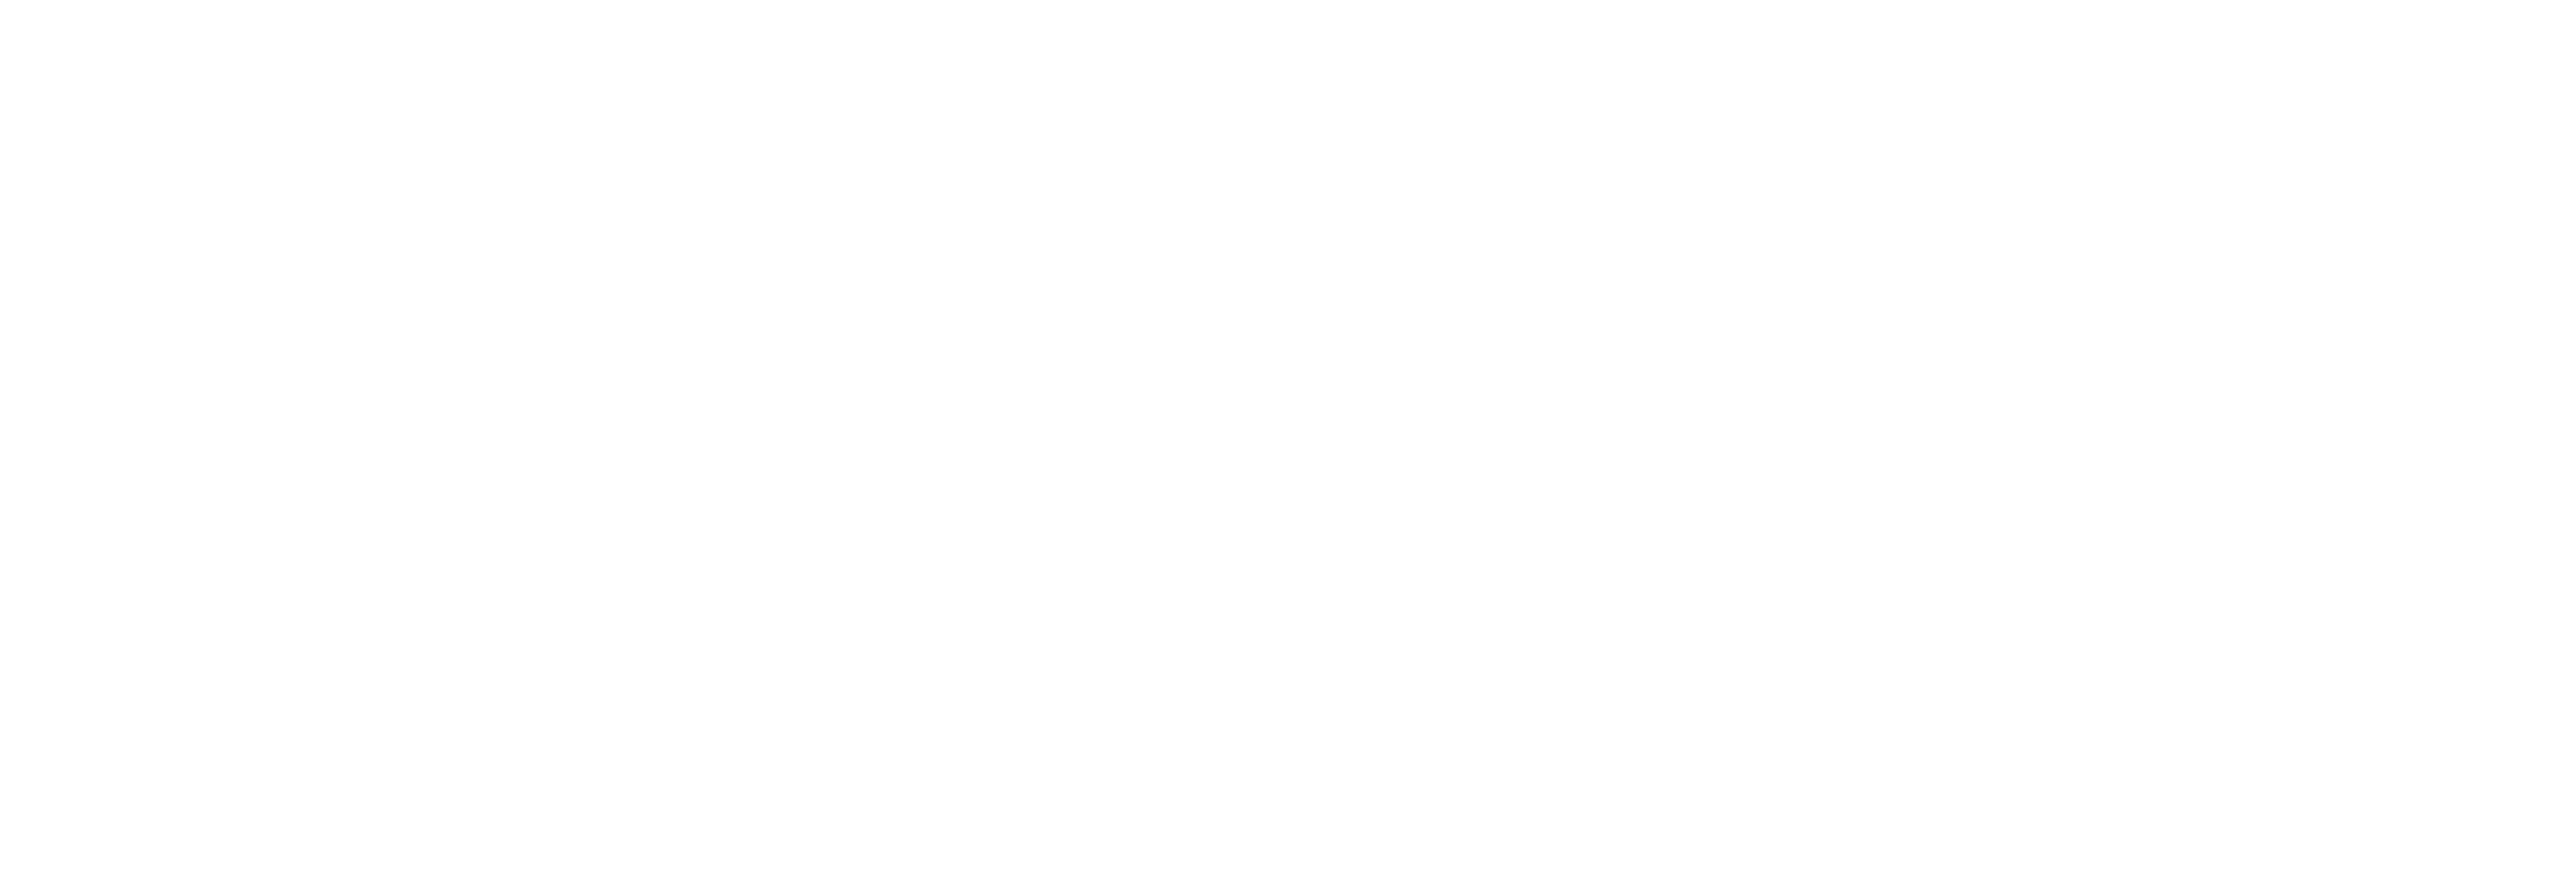 Clinique AniCura Paris III logo